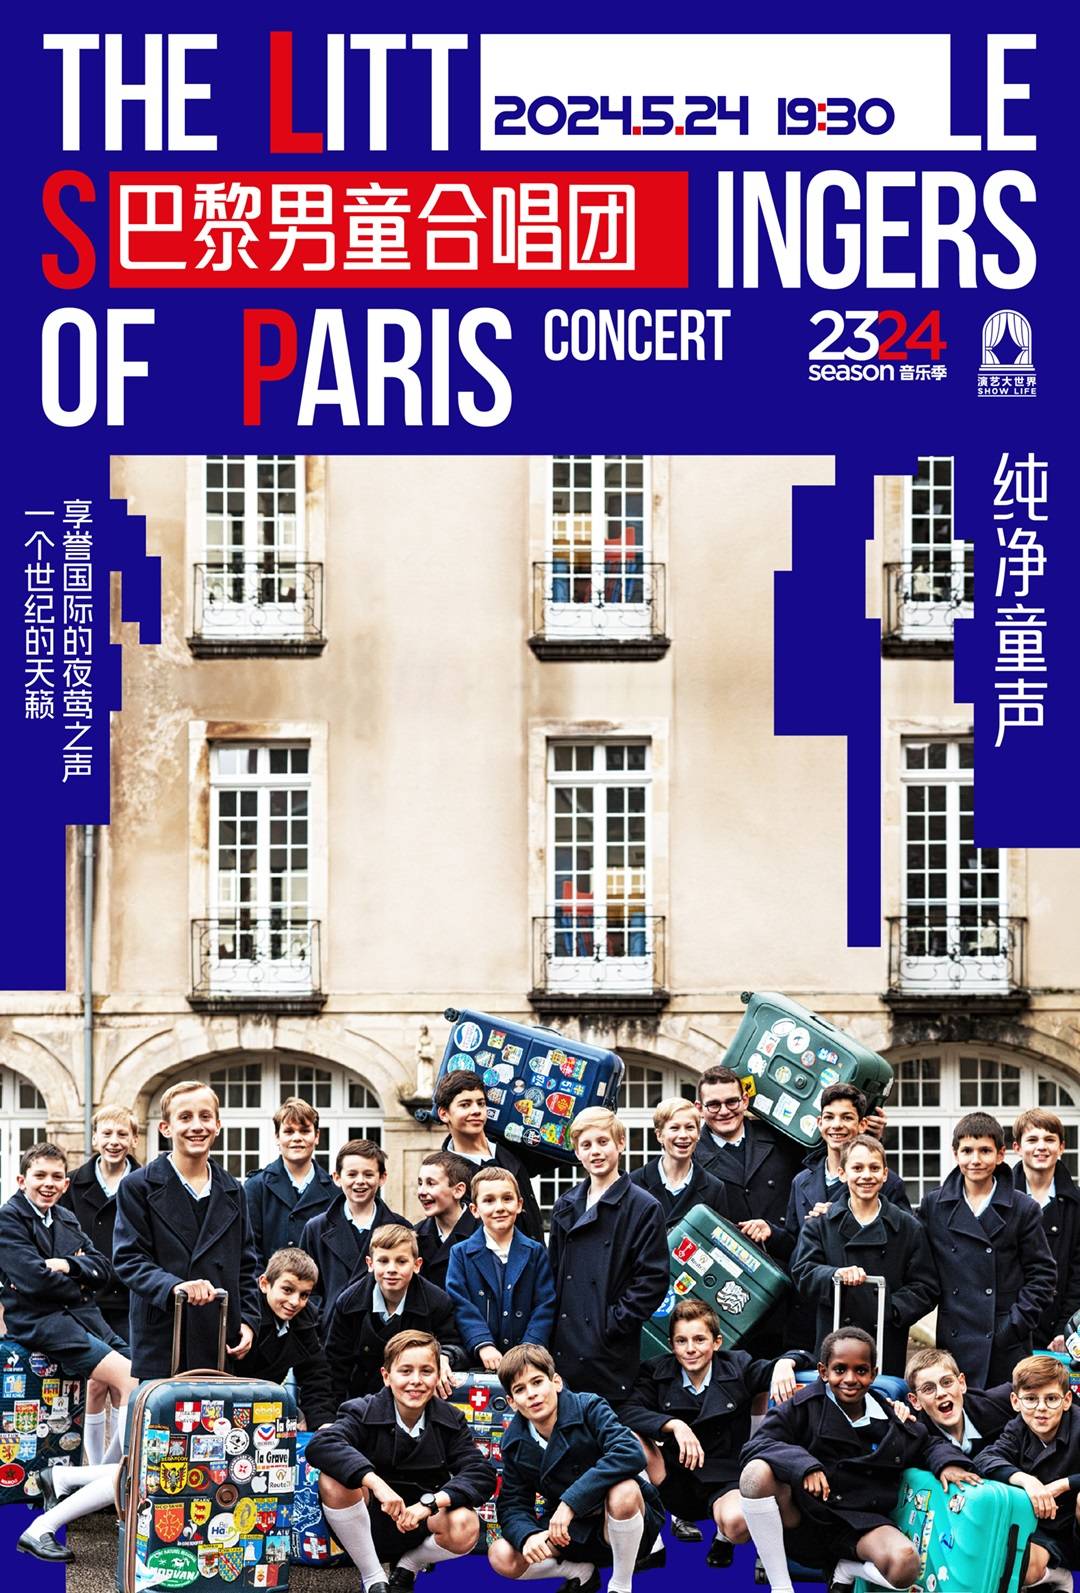 The Little Singers of Paris Concert